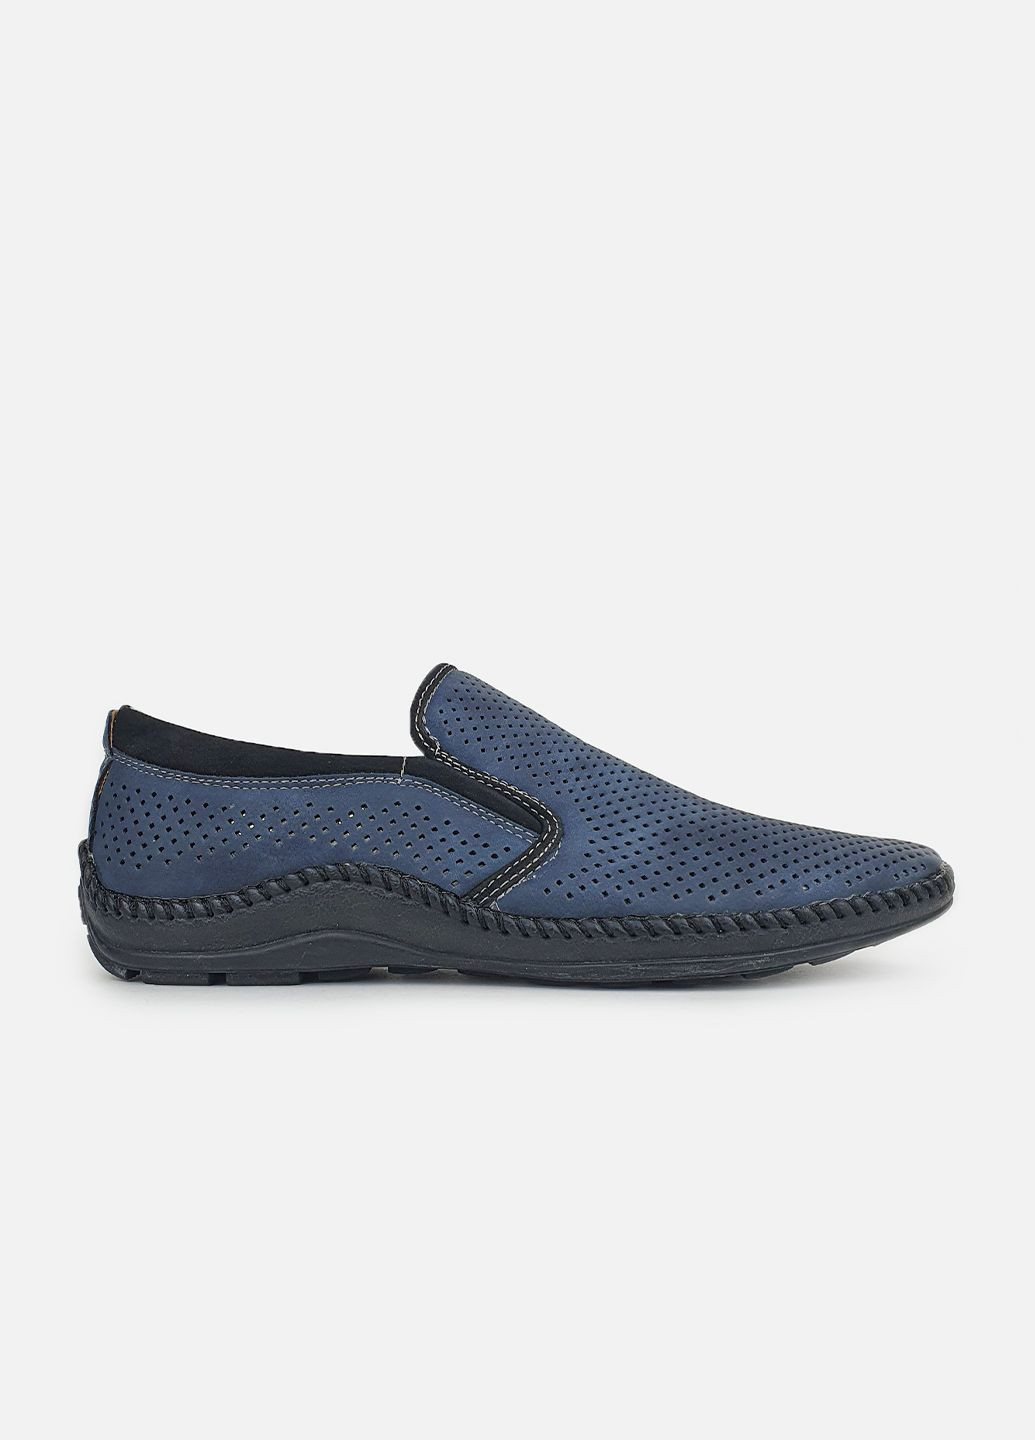 Синие мужские летние туфли,мокасины перфорация синие экокожа,flymo,d1372-5синкмок,40 Fashion